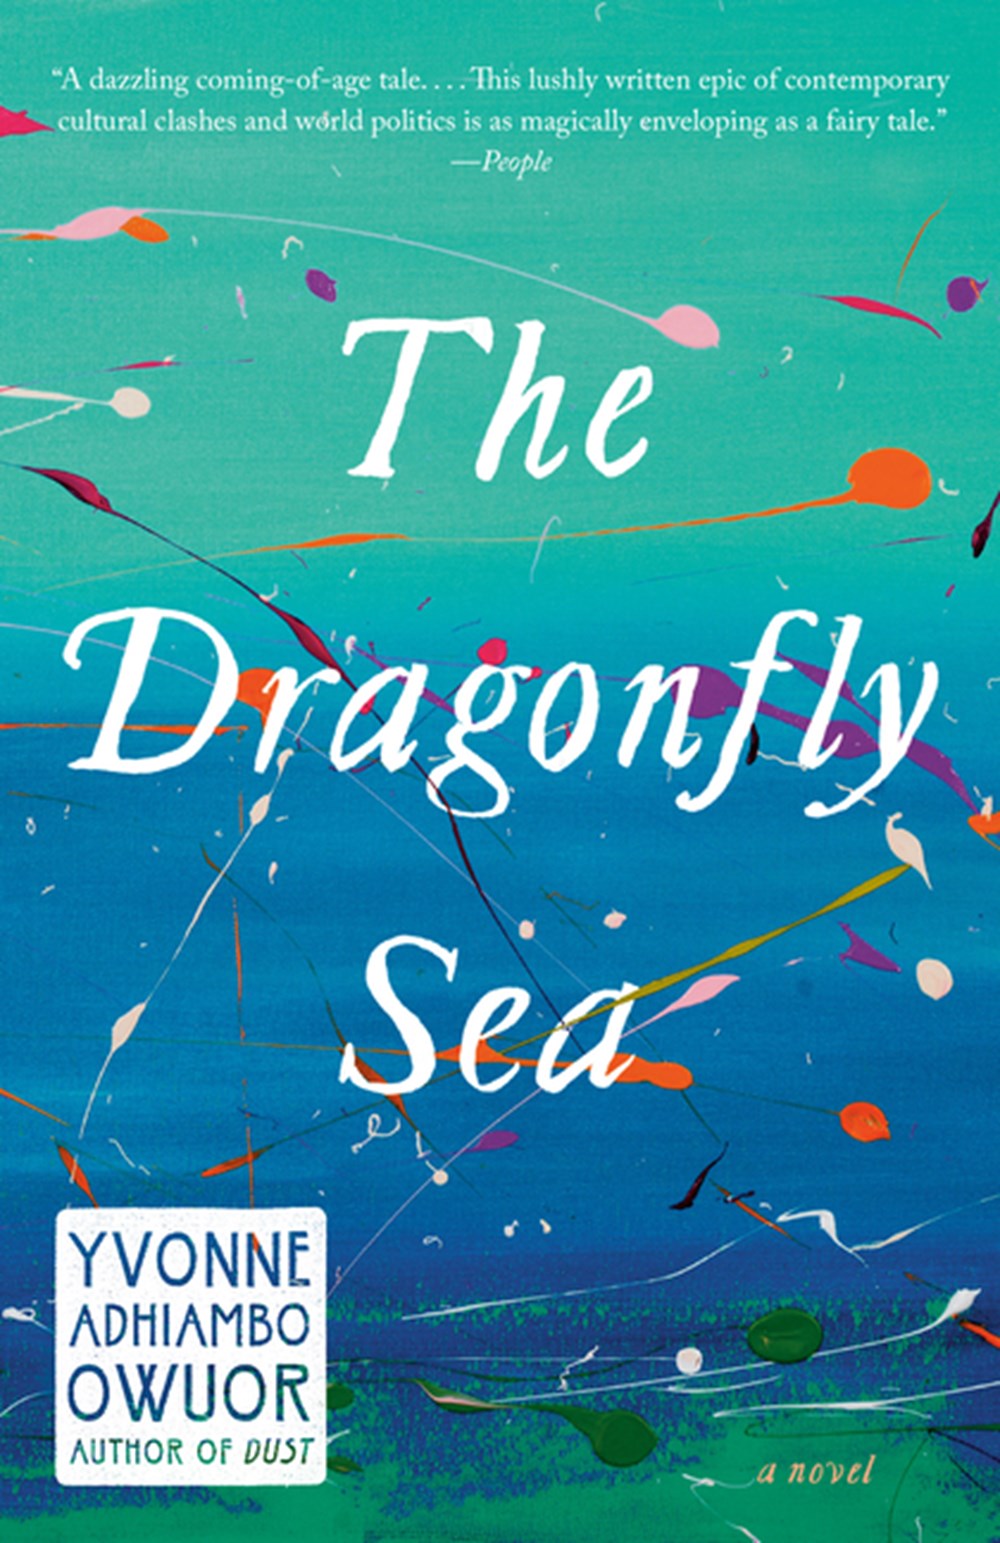 Dragonfly Sea